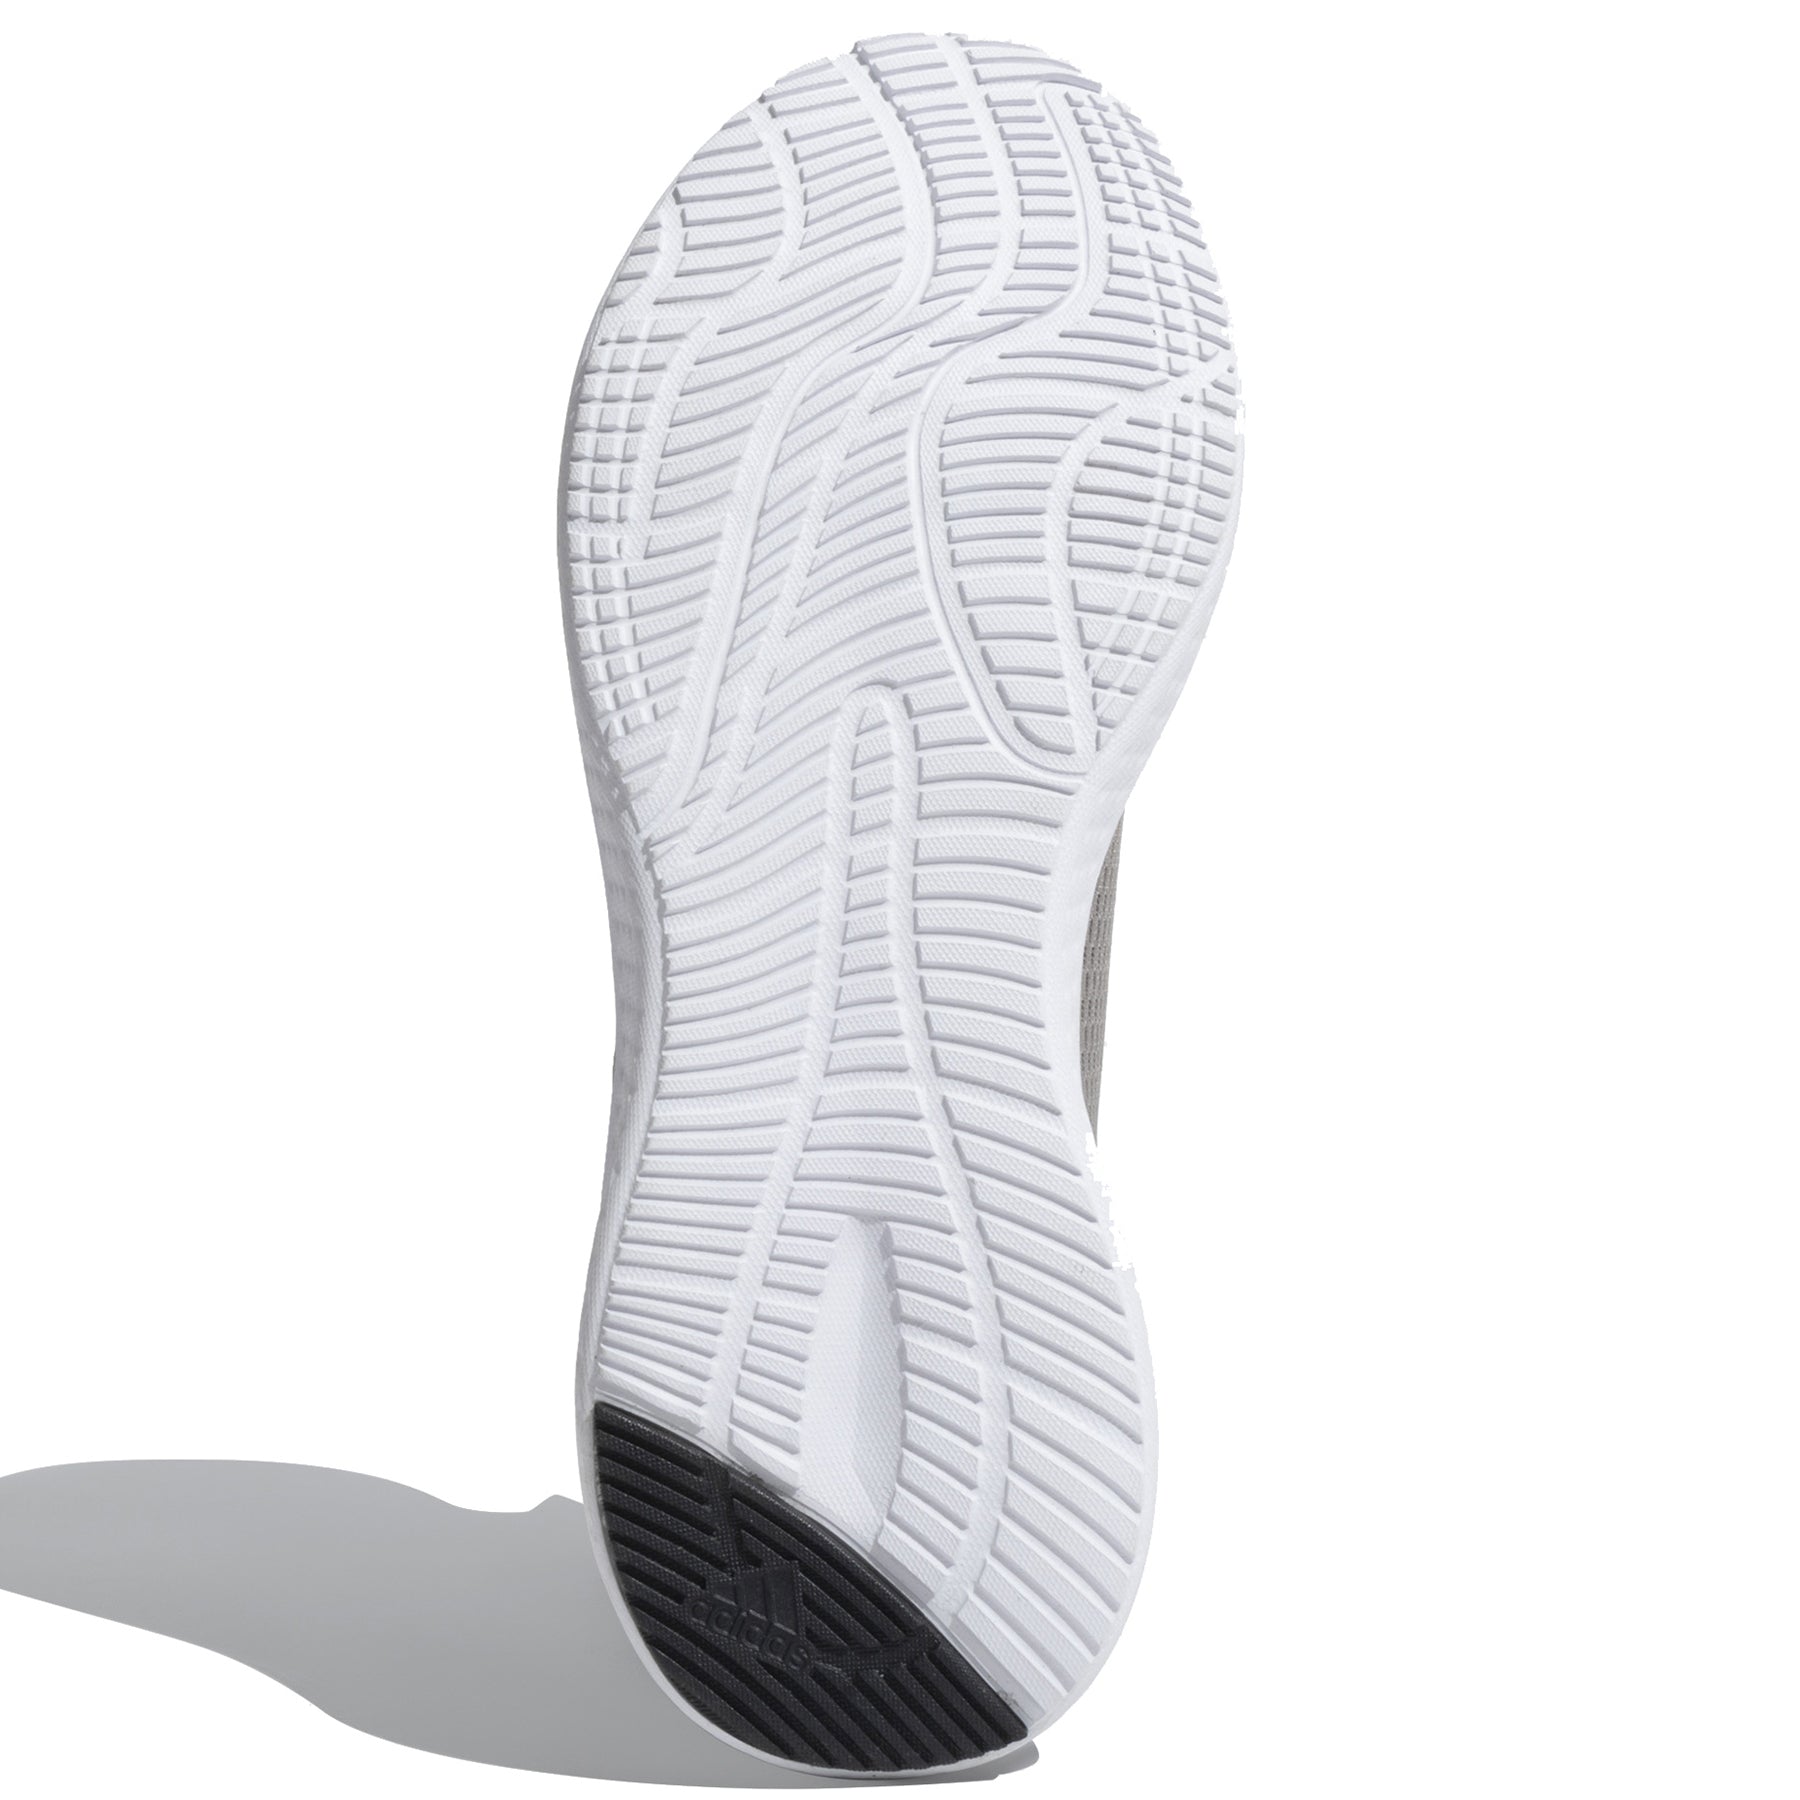 Zapatillas Adidas Hombre Running Peprun M | GC0905